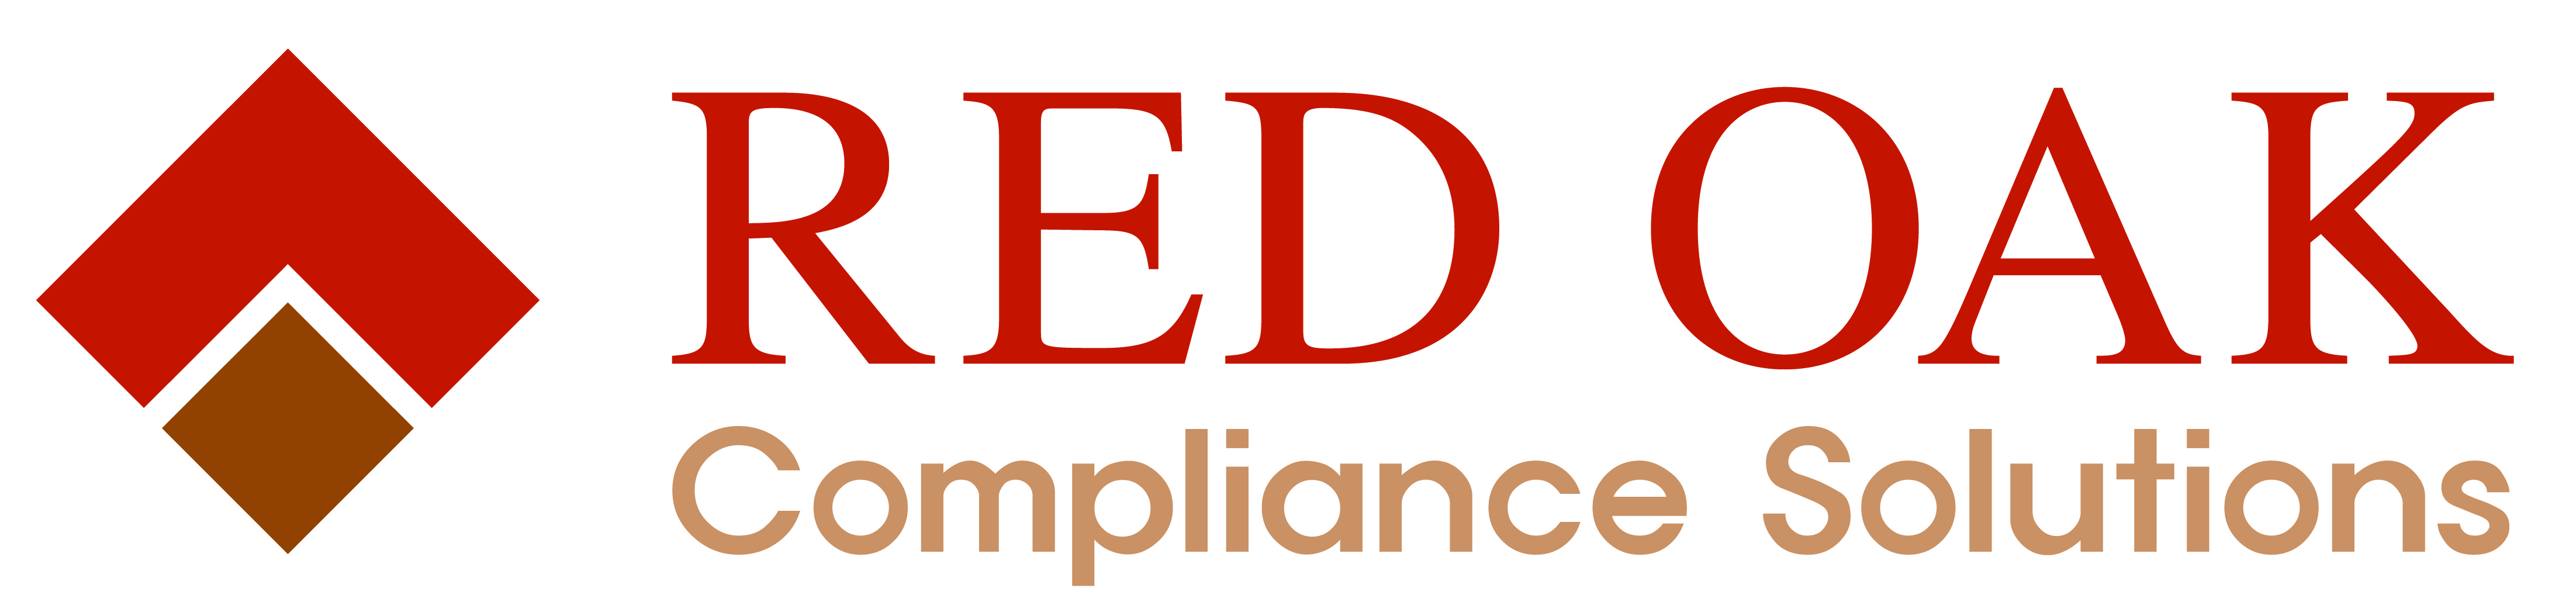 Red Oak Compliance Solutions, LLC logo